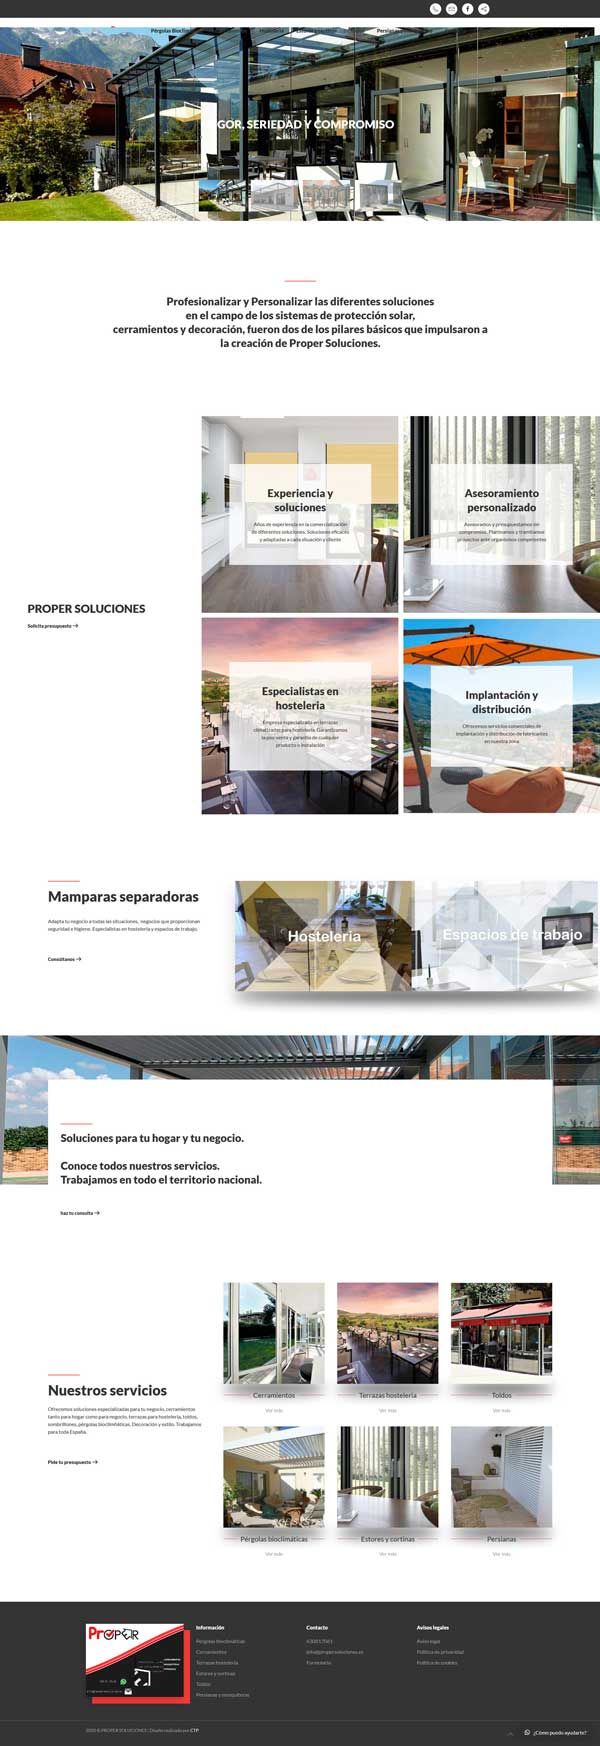 Página web de proper soluciones. Diseño web Valladolid. Portada.